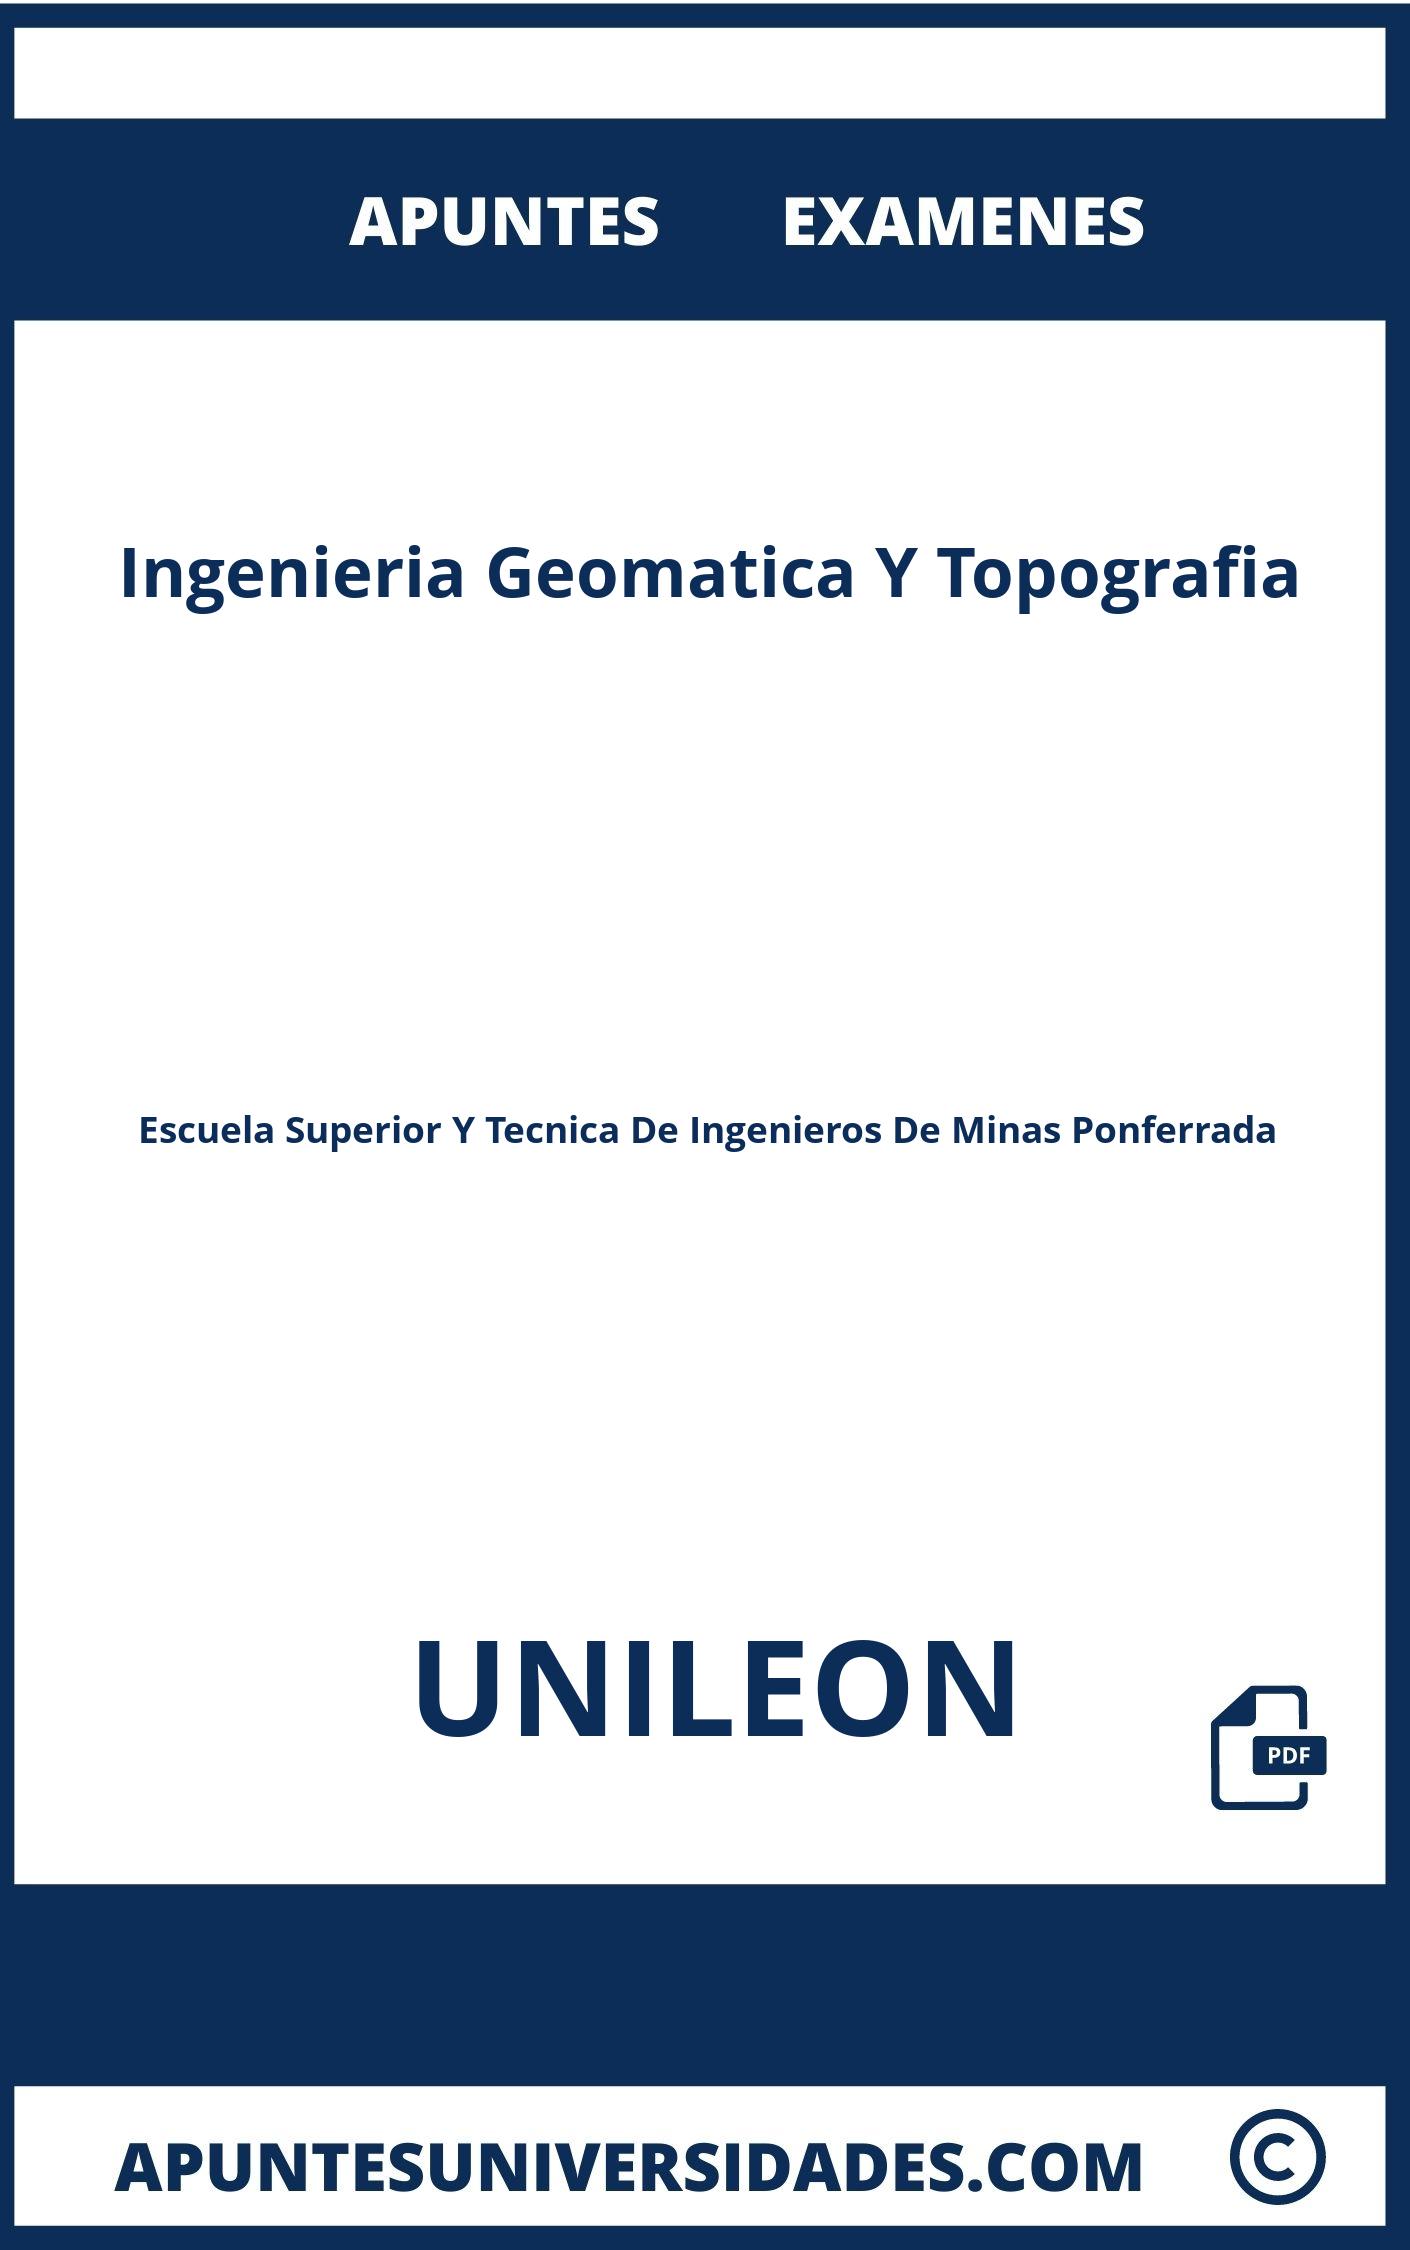 Examenes y Apuntes de Ingenieria Geomatica Y Topografia UNILEON